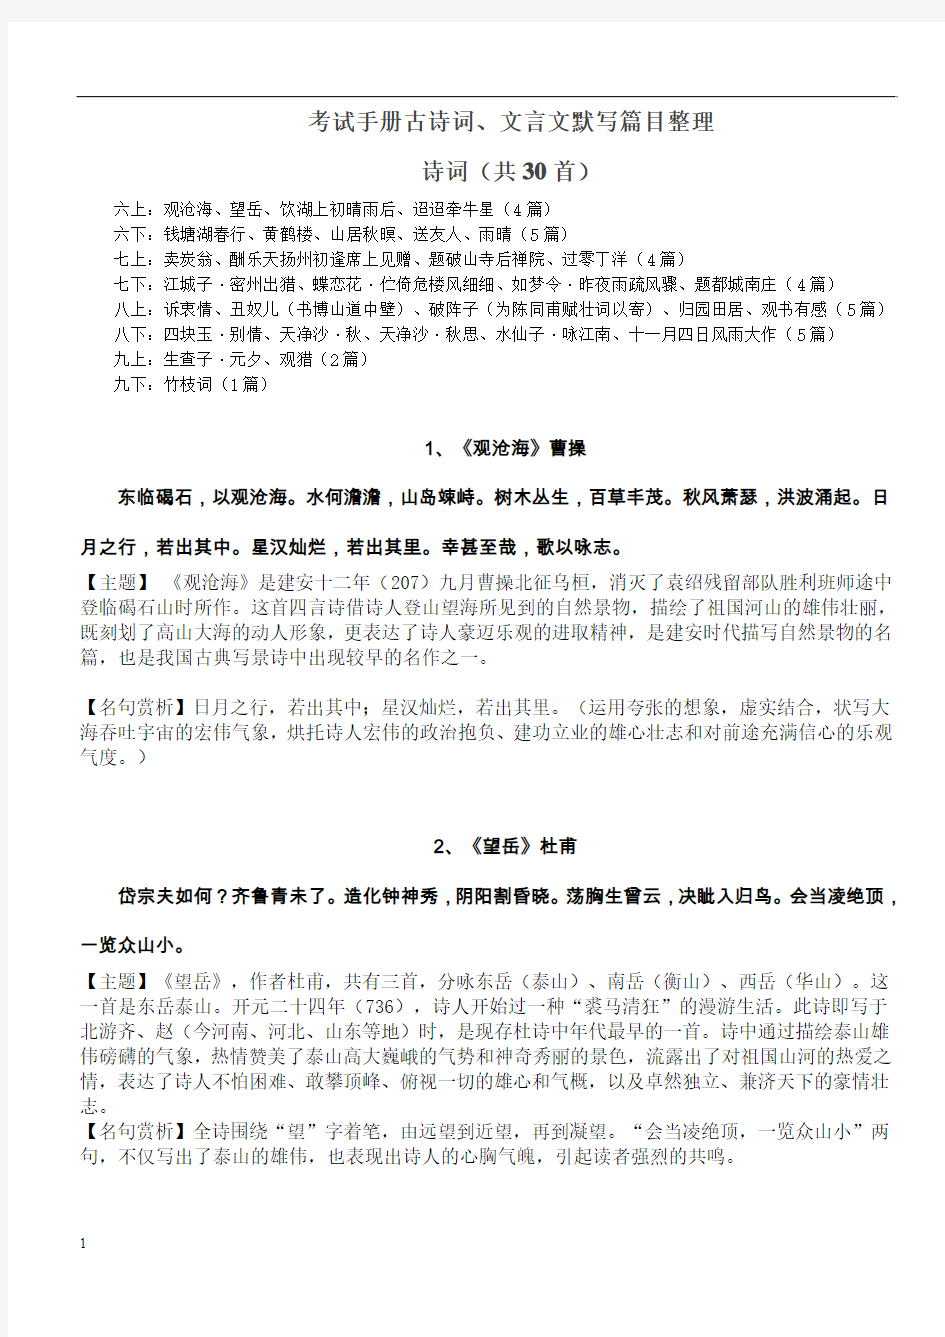 上海中考考试手册古诗词、文言文默写篇目整理.介绍